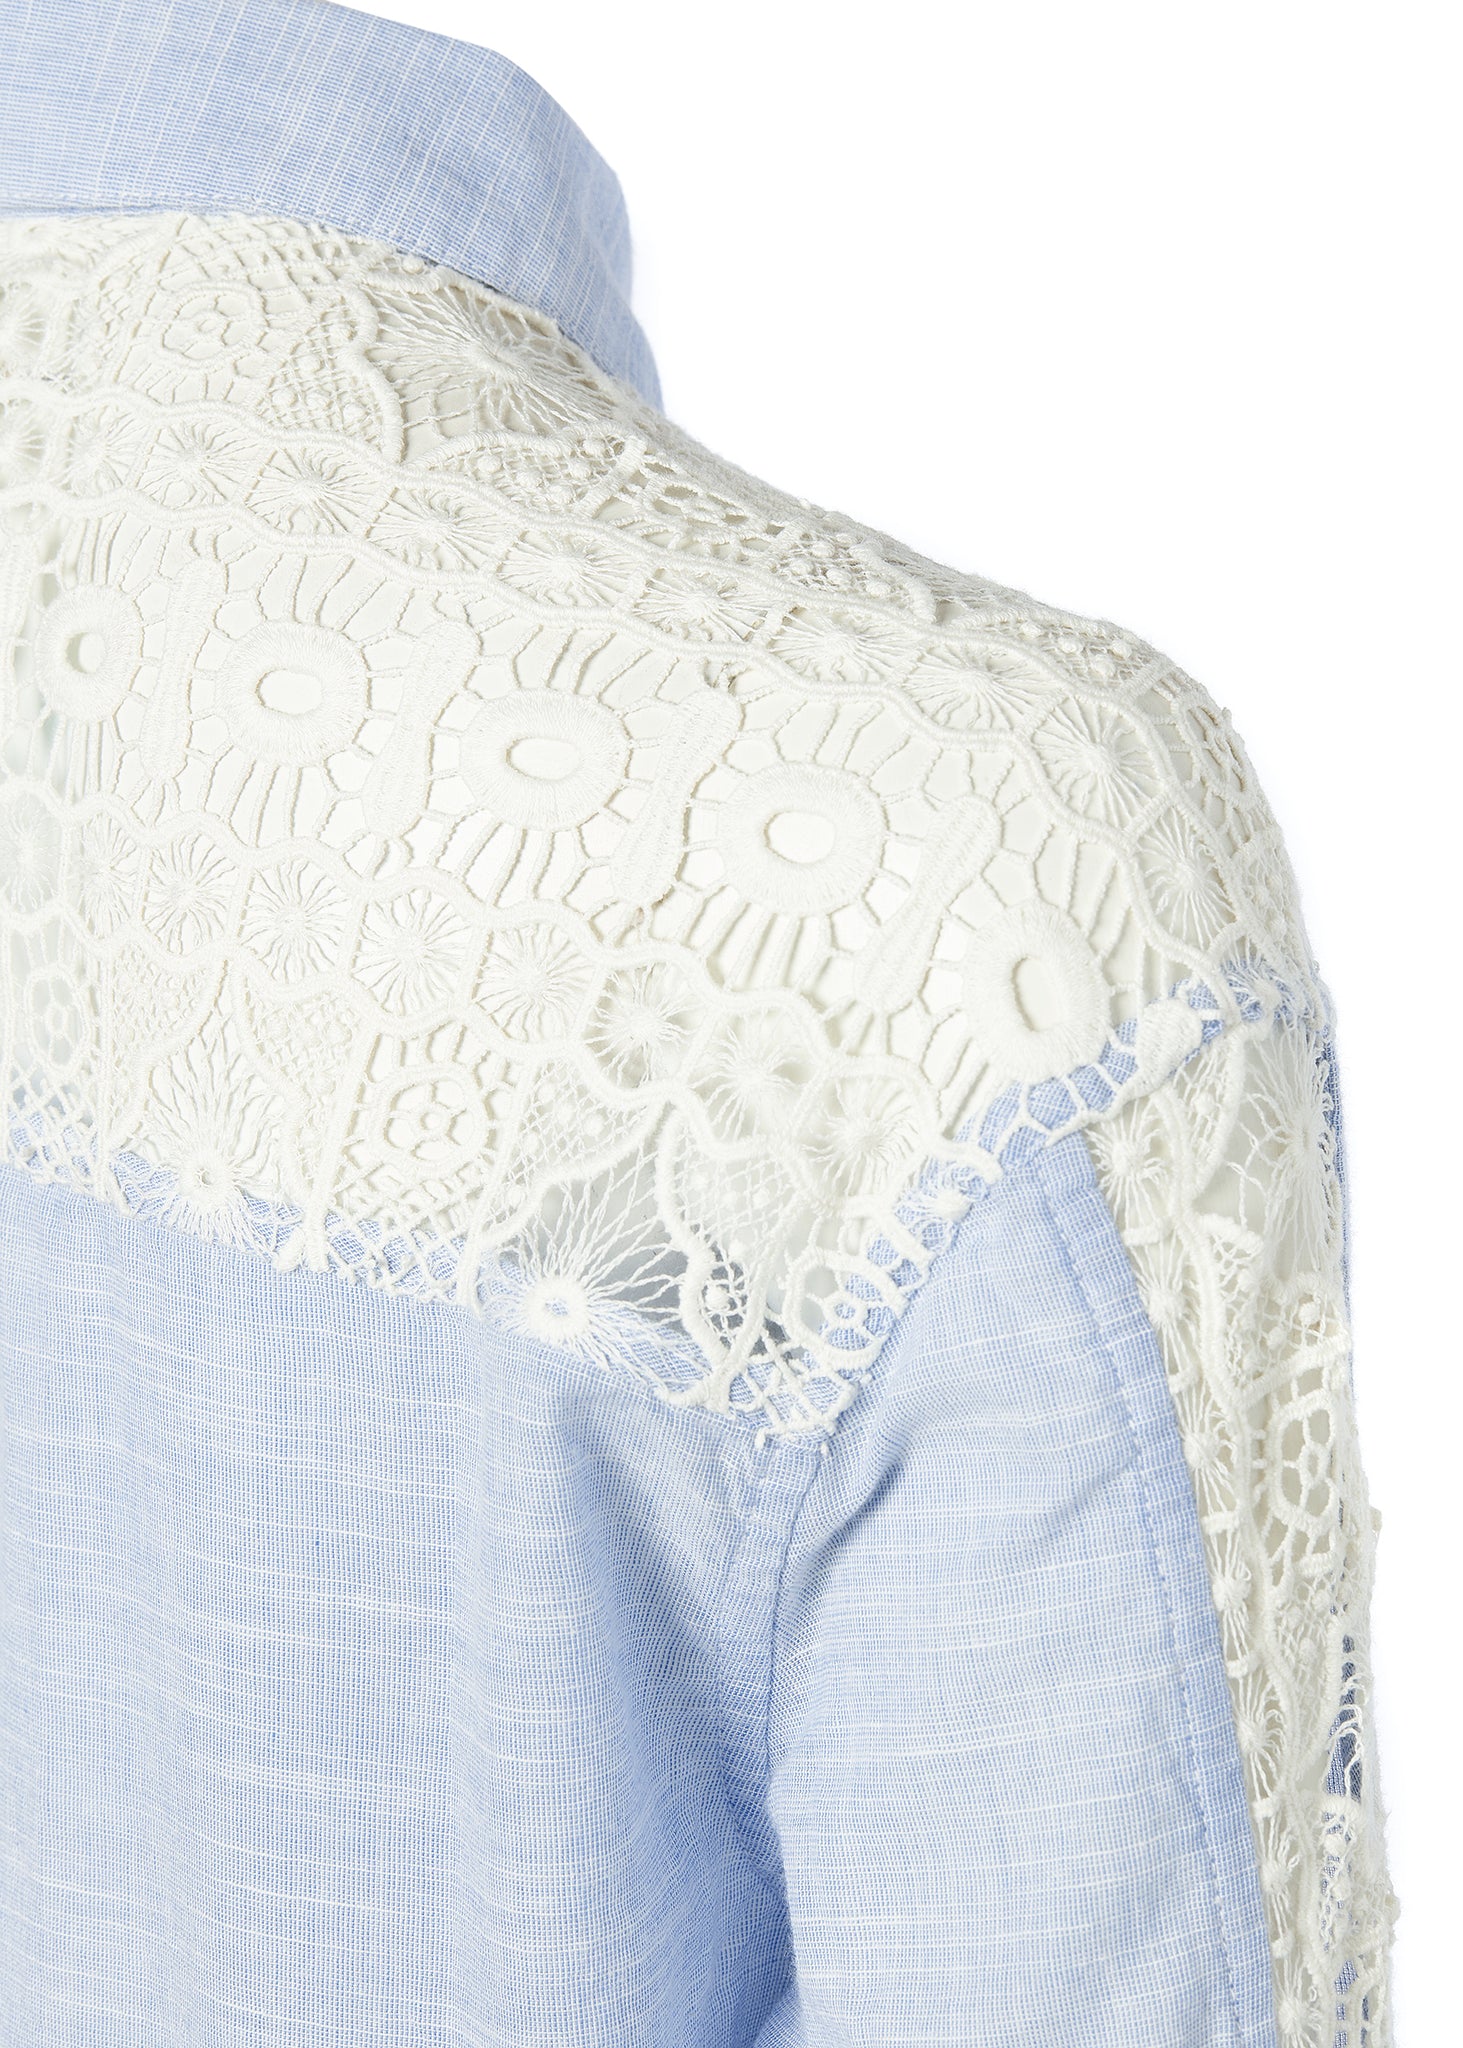 Oversized Cotton Lace Shirt (Tick Stripe Sky Blue)